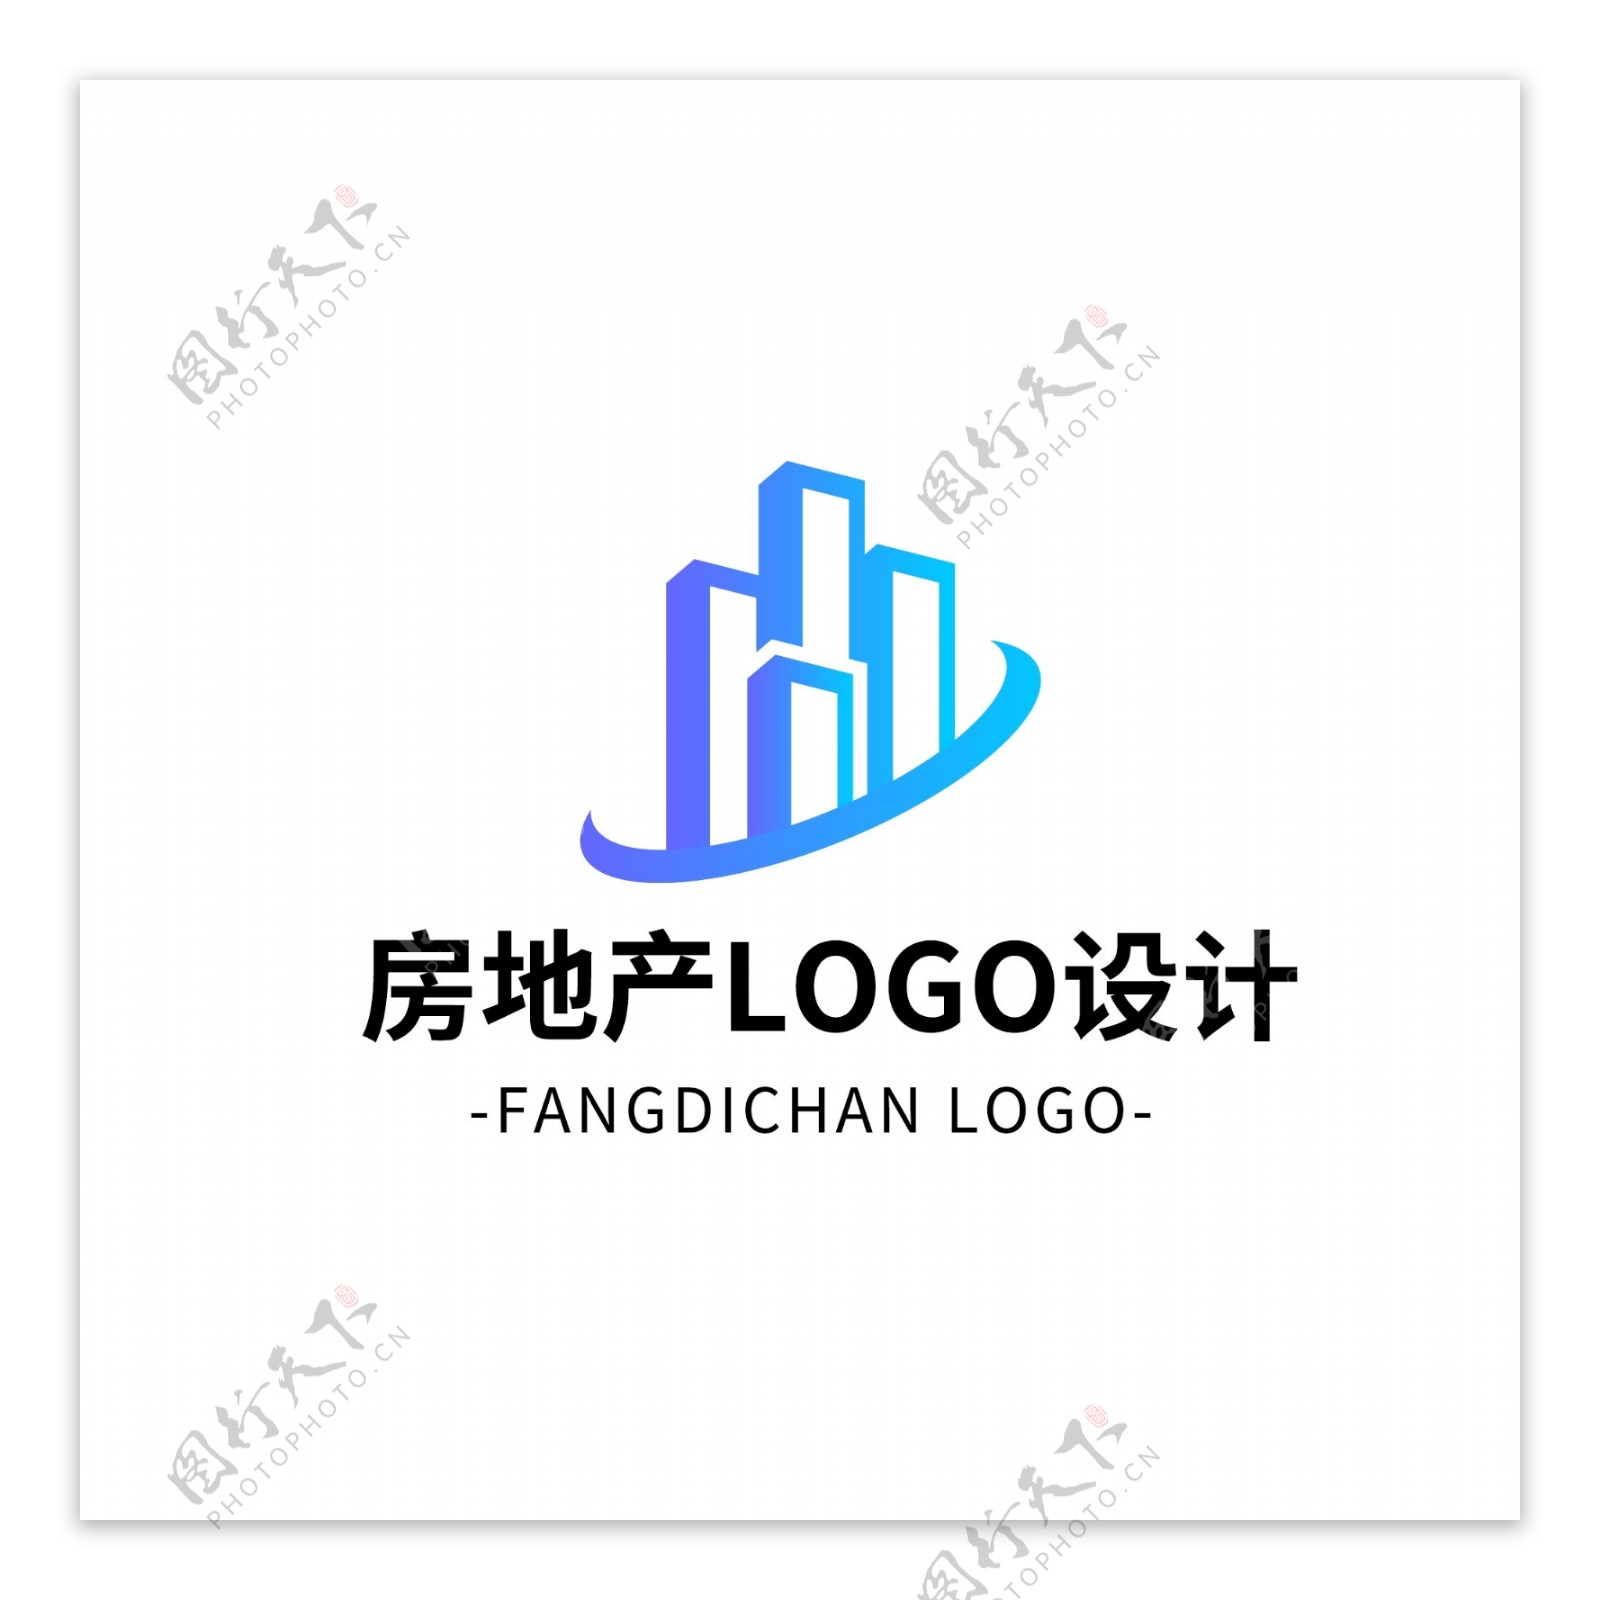 简约大气房地产logo标志设计